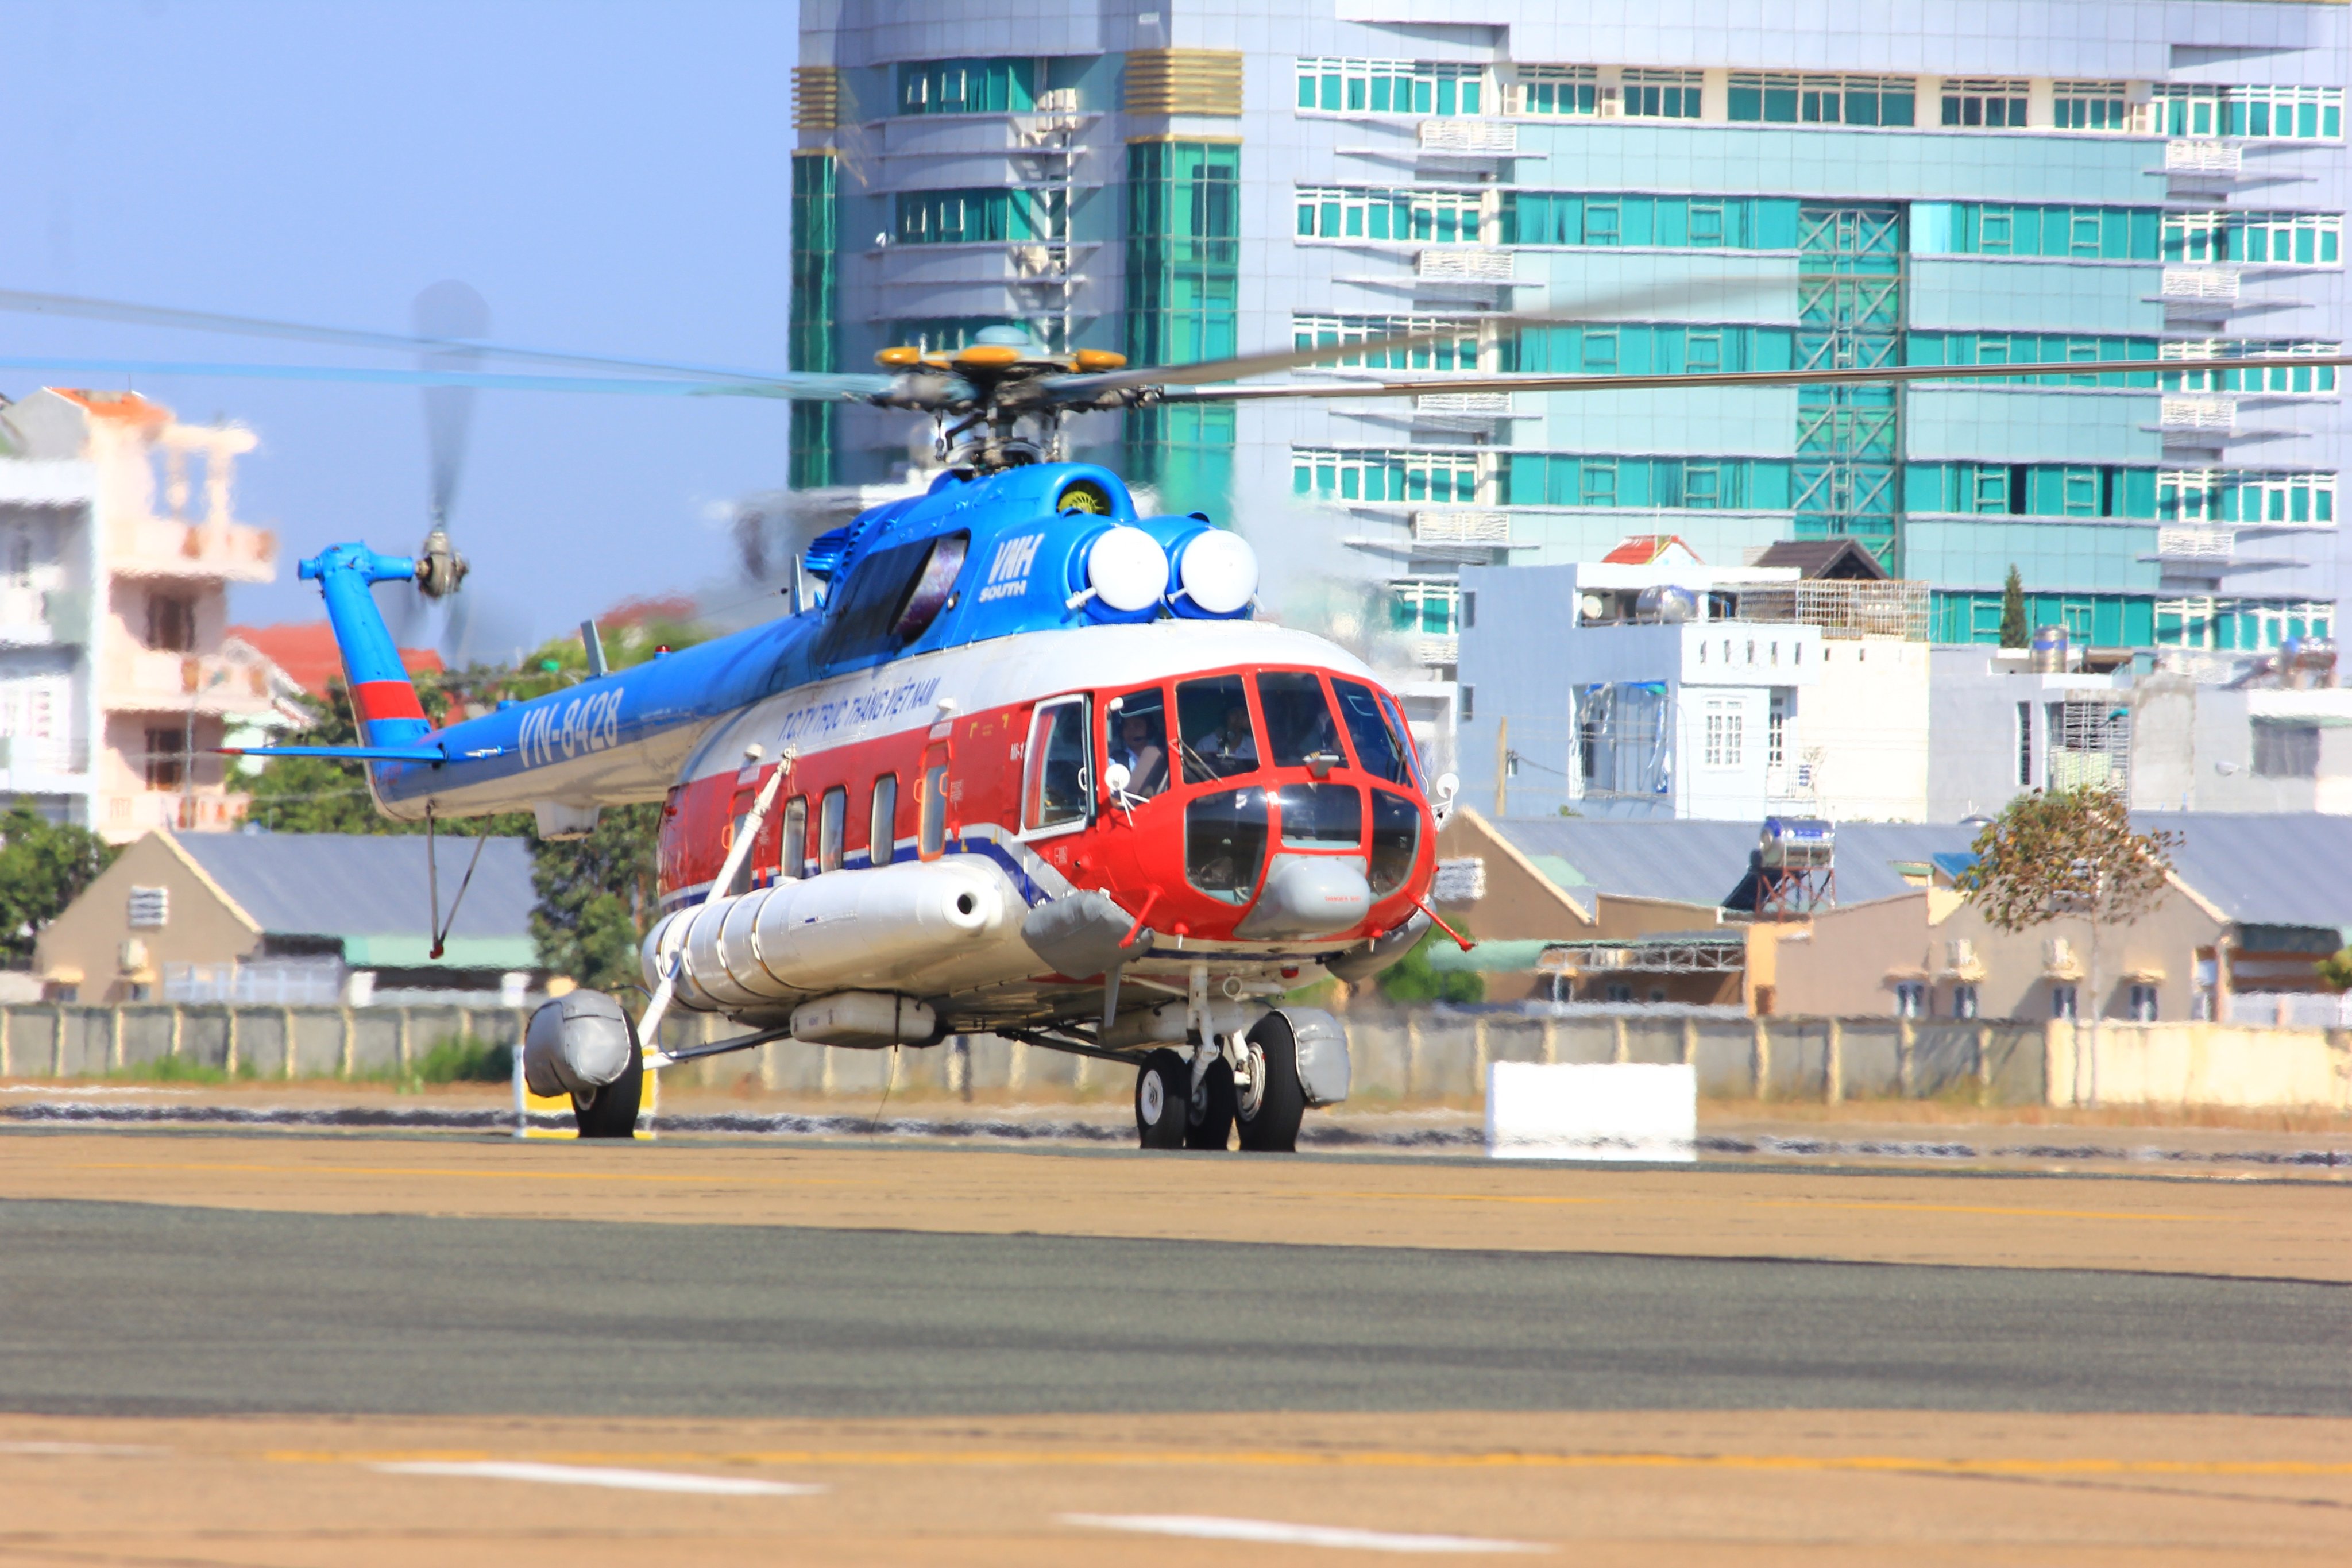 UBND tỉnh BR-VT đề nghị VNH South hỗ trợ bay chuyến Vũng Tàu-Côn Đảo ít nhất 1 lần/tuần để vận chuyển cấp cứu, bệnh phẩm, xét nghiệm và chuyến bay khẩn cấp khi có yêu cầu.